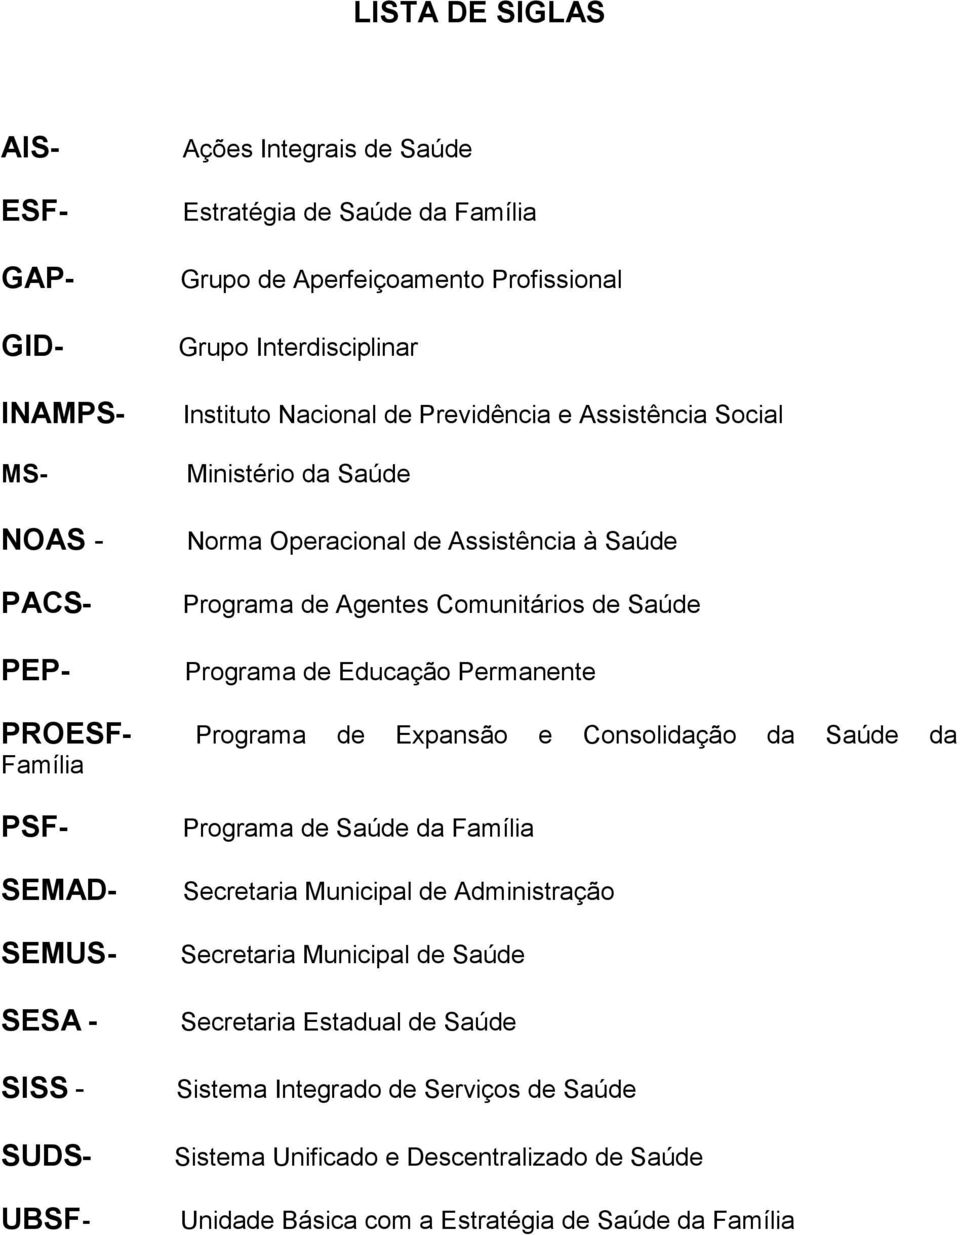 Permanente PROESF- Programa de Expansão e Consolidação da Saúde da Família PSF- SEMAD- SEMUS- SESA - SISS - SUDS- UBSF- Programa de Saúde da Família Secretaria Municipal de